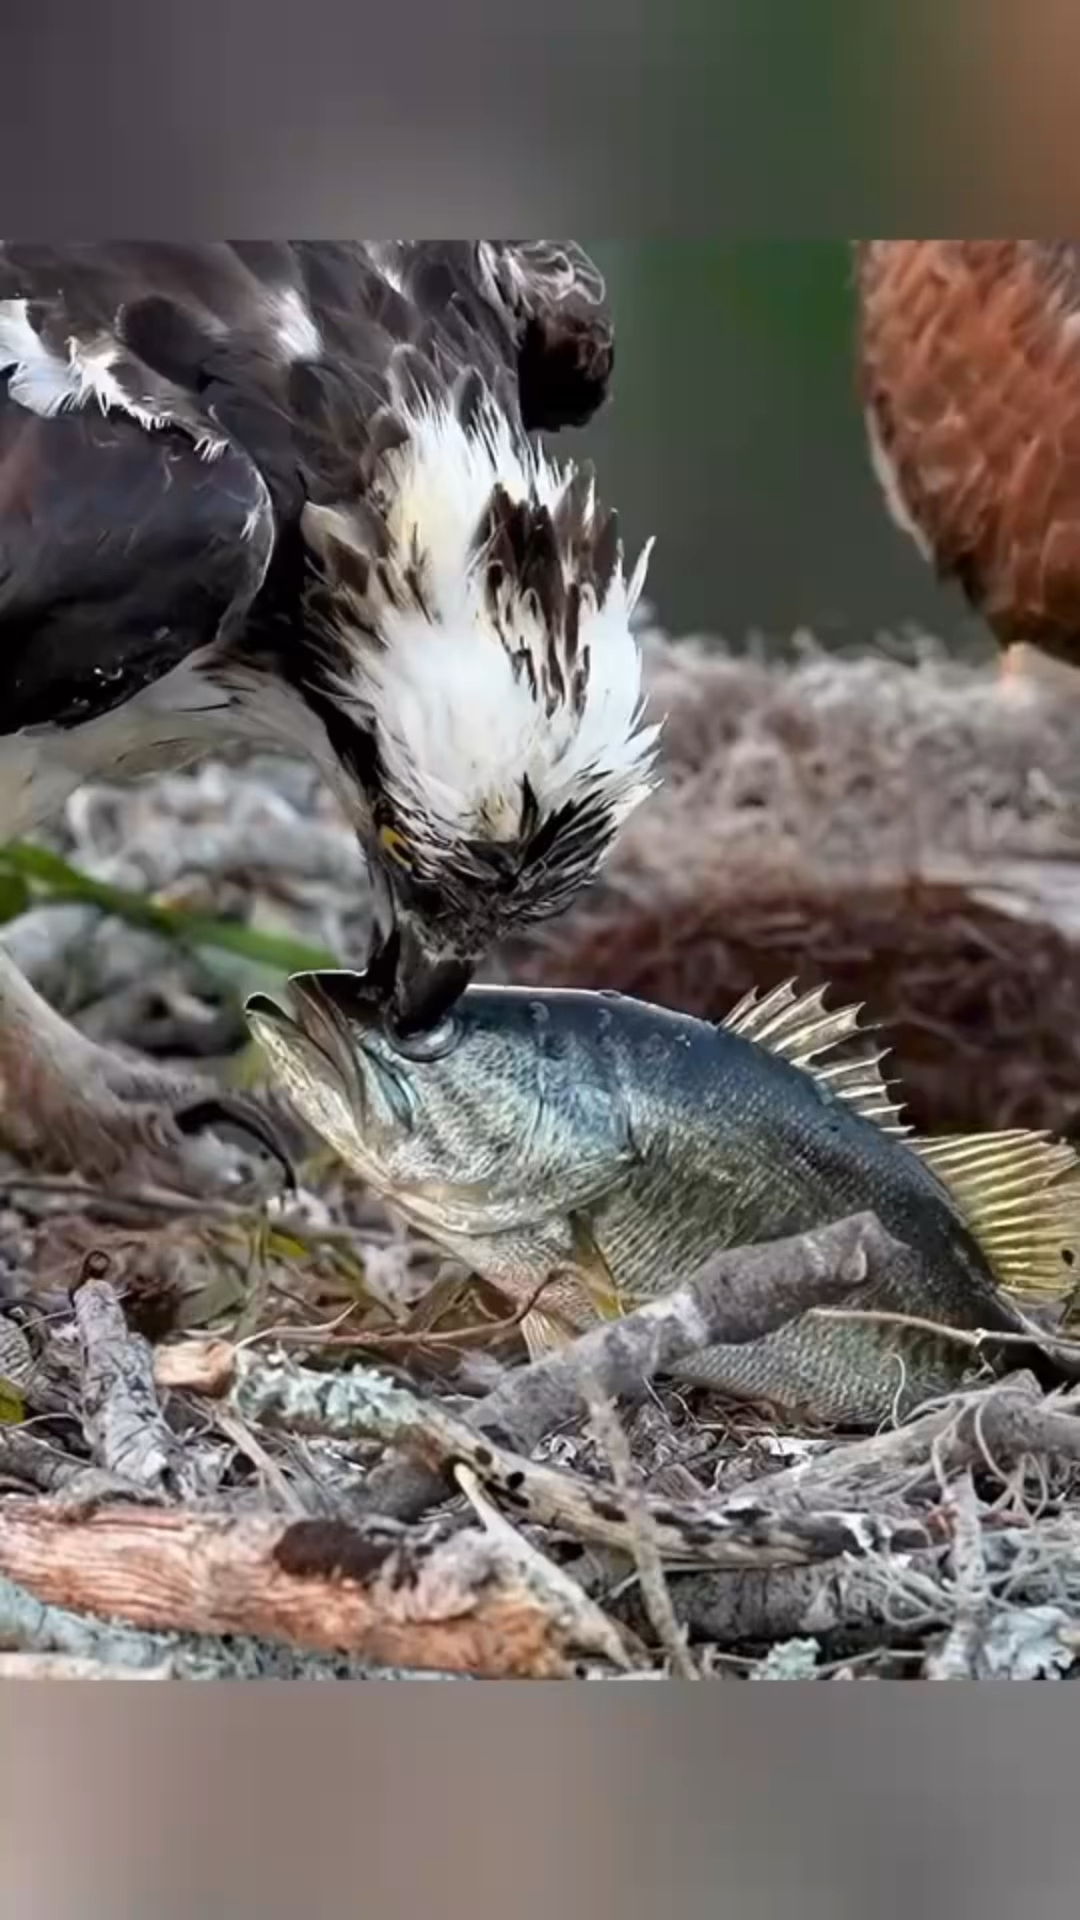 老鹰吃鱼,精彩画面